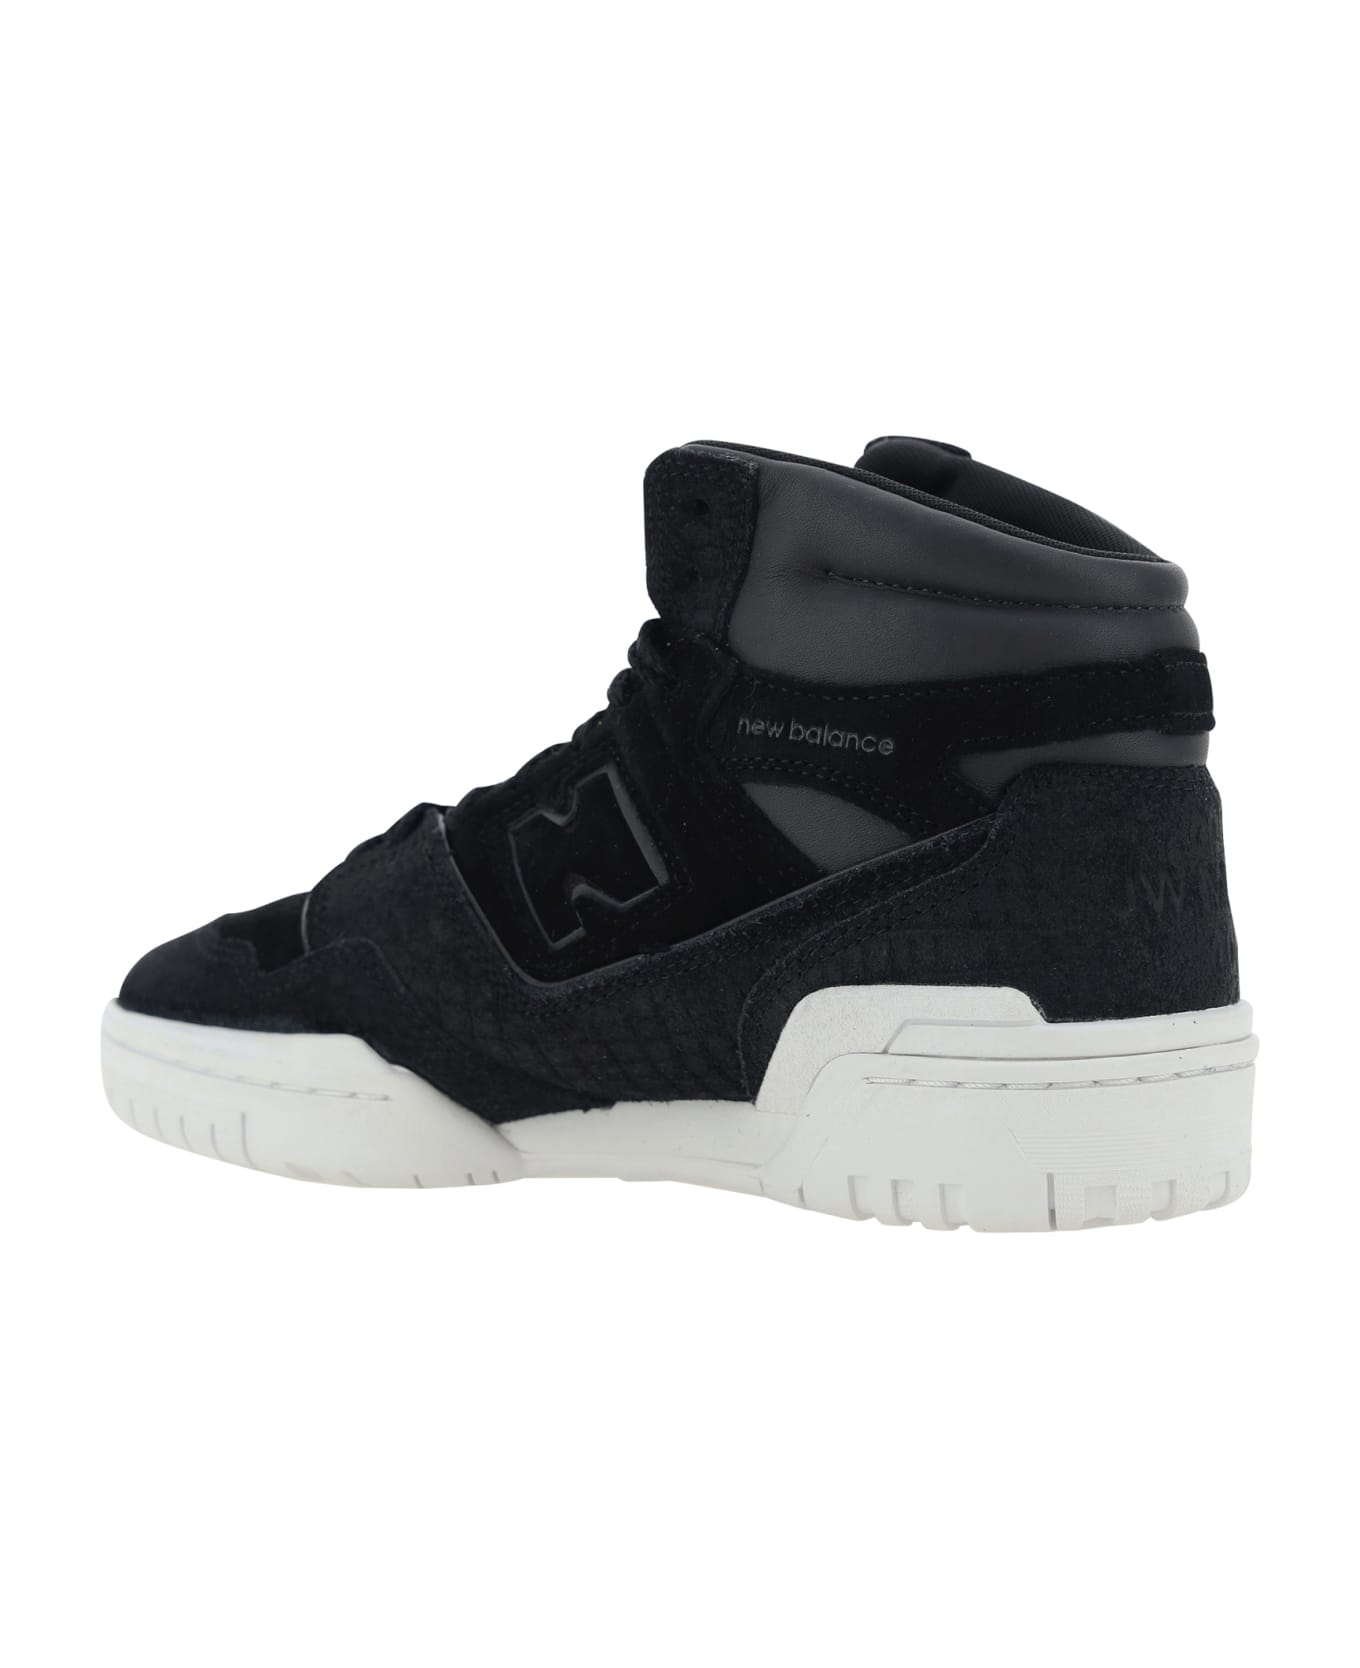 Junya Watanabe X New Balance Bb650 Sneakers - Black X Black